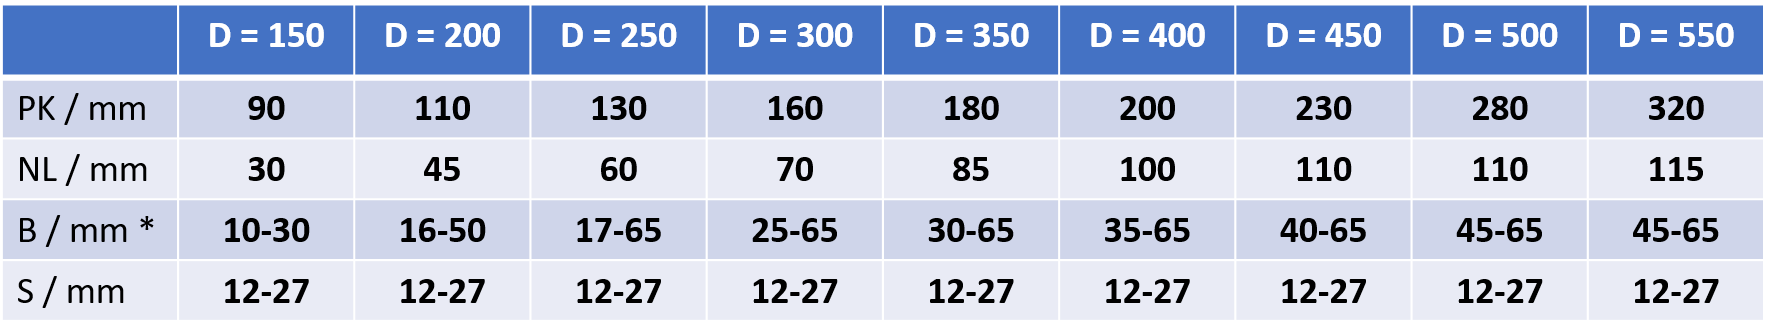 Sisal Gewebe Vorpolierscheibe SI/W/PK Dimensionen Tabelle